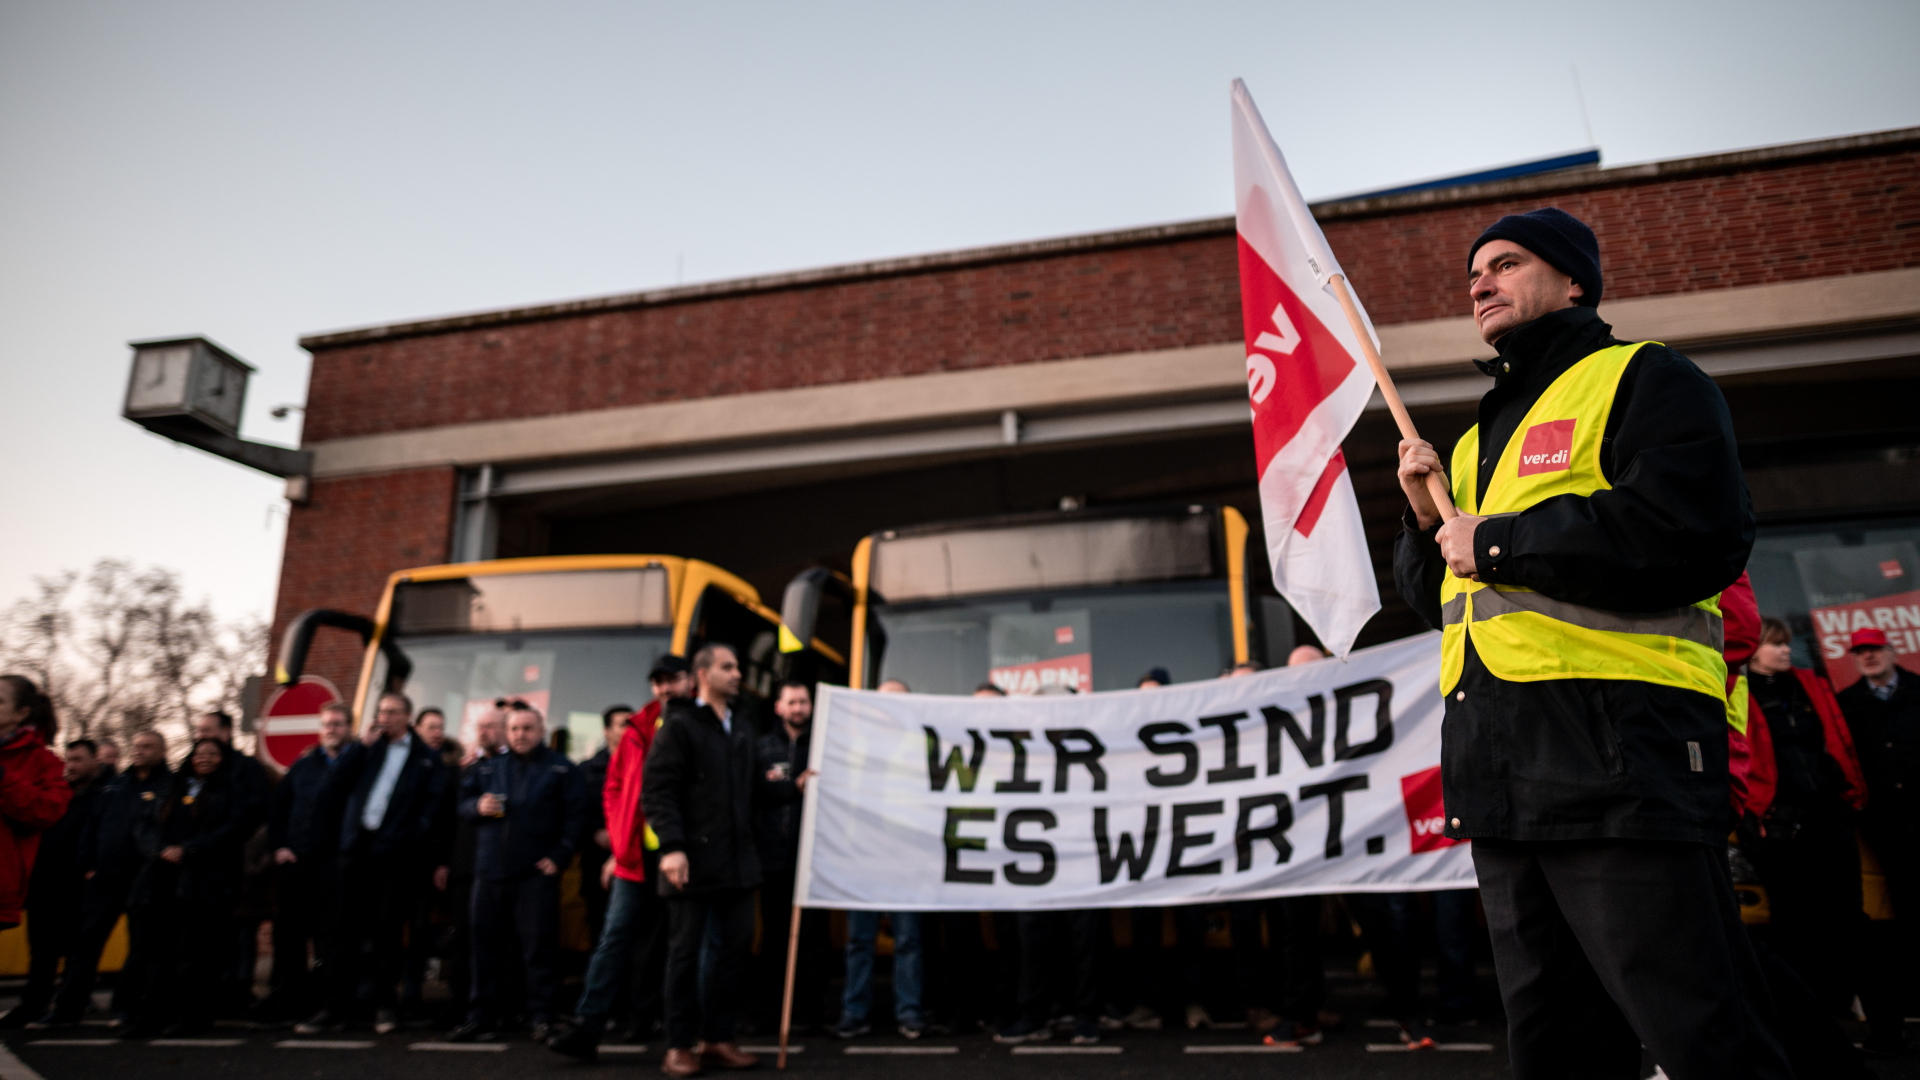 Streikende Mitarbeiter der Verkehrsbetriebe in Essen demonstrieren mit Ver.di-Fahne und einem Transparent "Wir sind es wert".